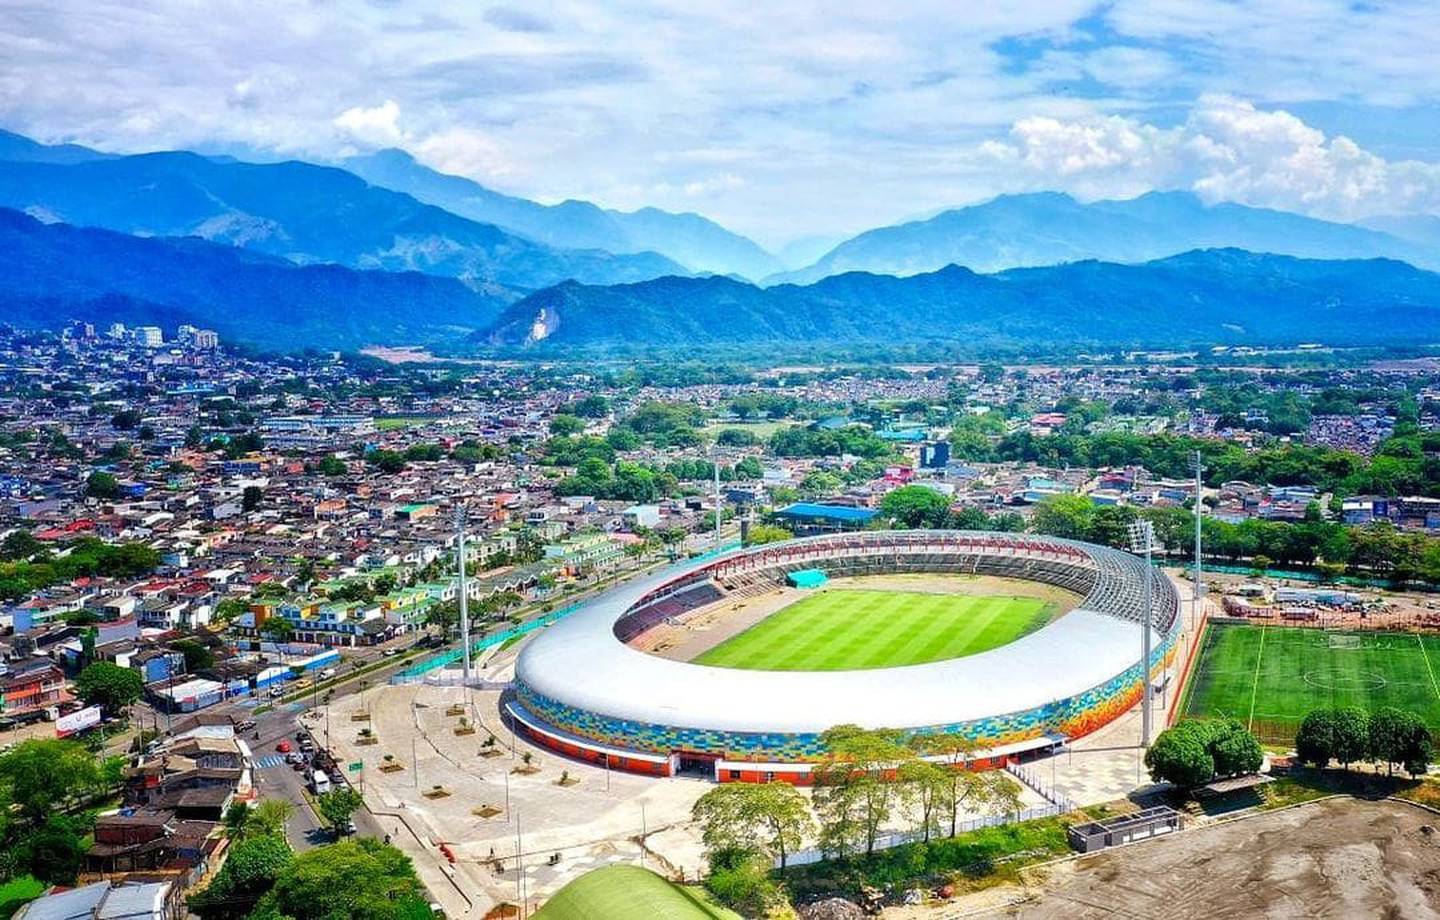 El estadio Bello Horizonte, casa de los Llaneros en Colombia tendrá el nombre de Pelé. Facebook.